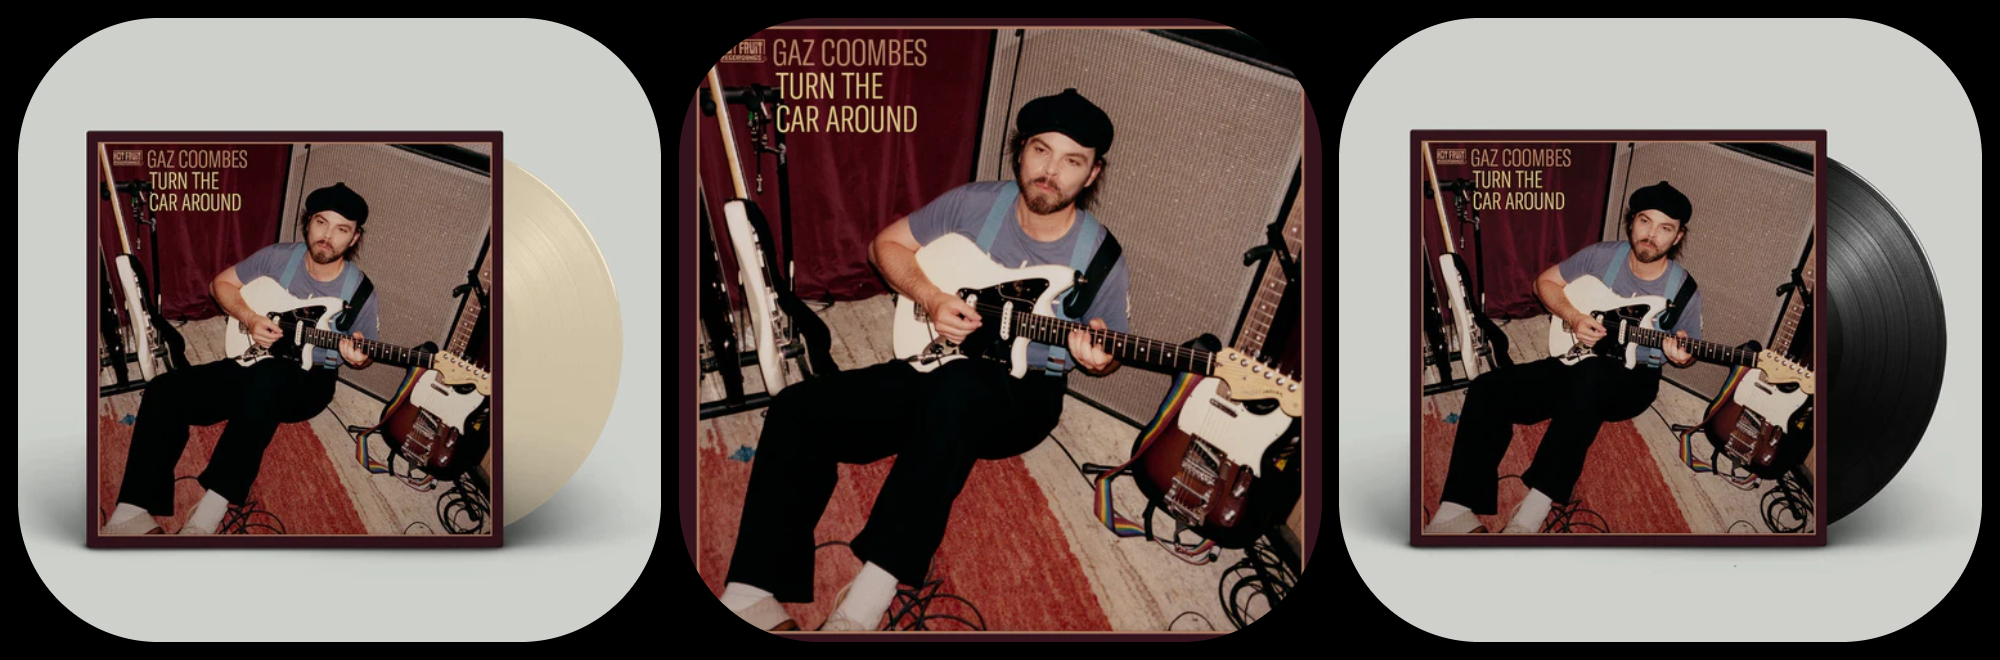 Gaz Coombes new album